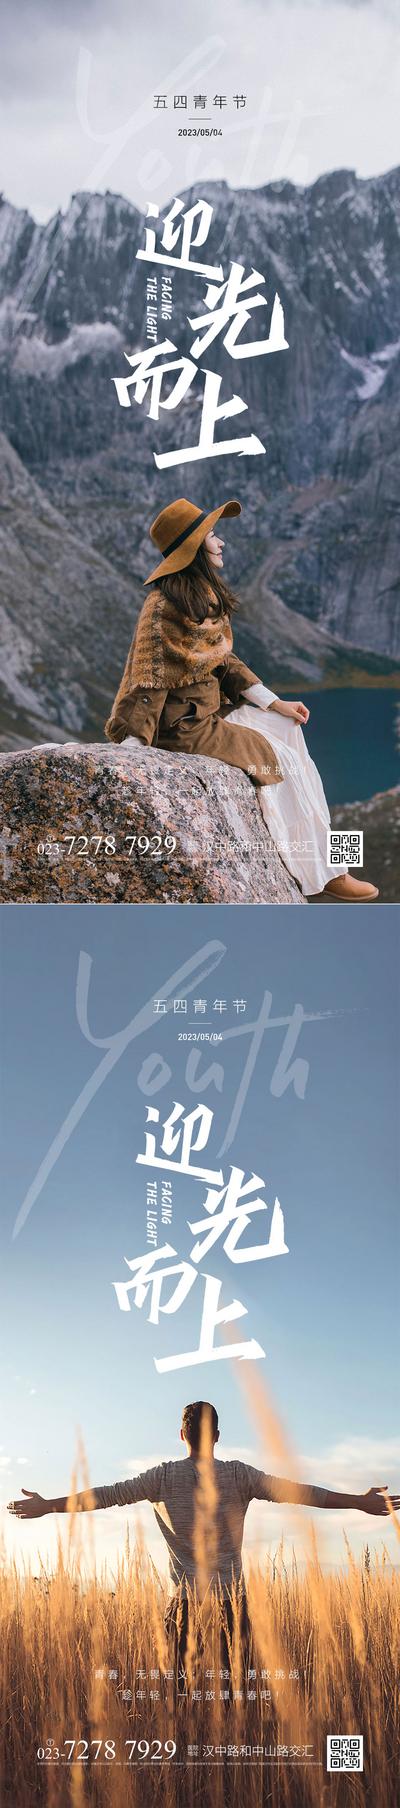 南门网 广告 海报 节日 青年节 五四 登山 清新